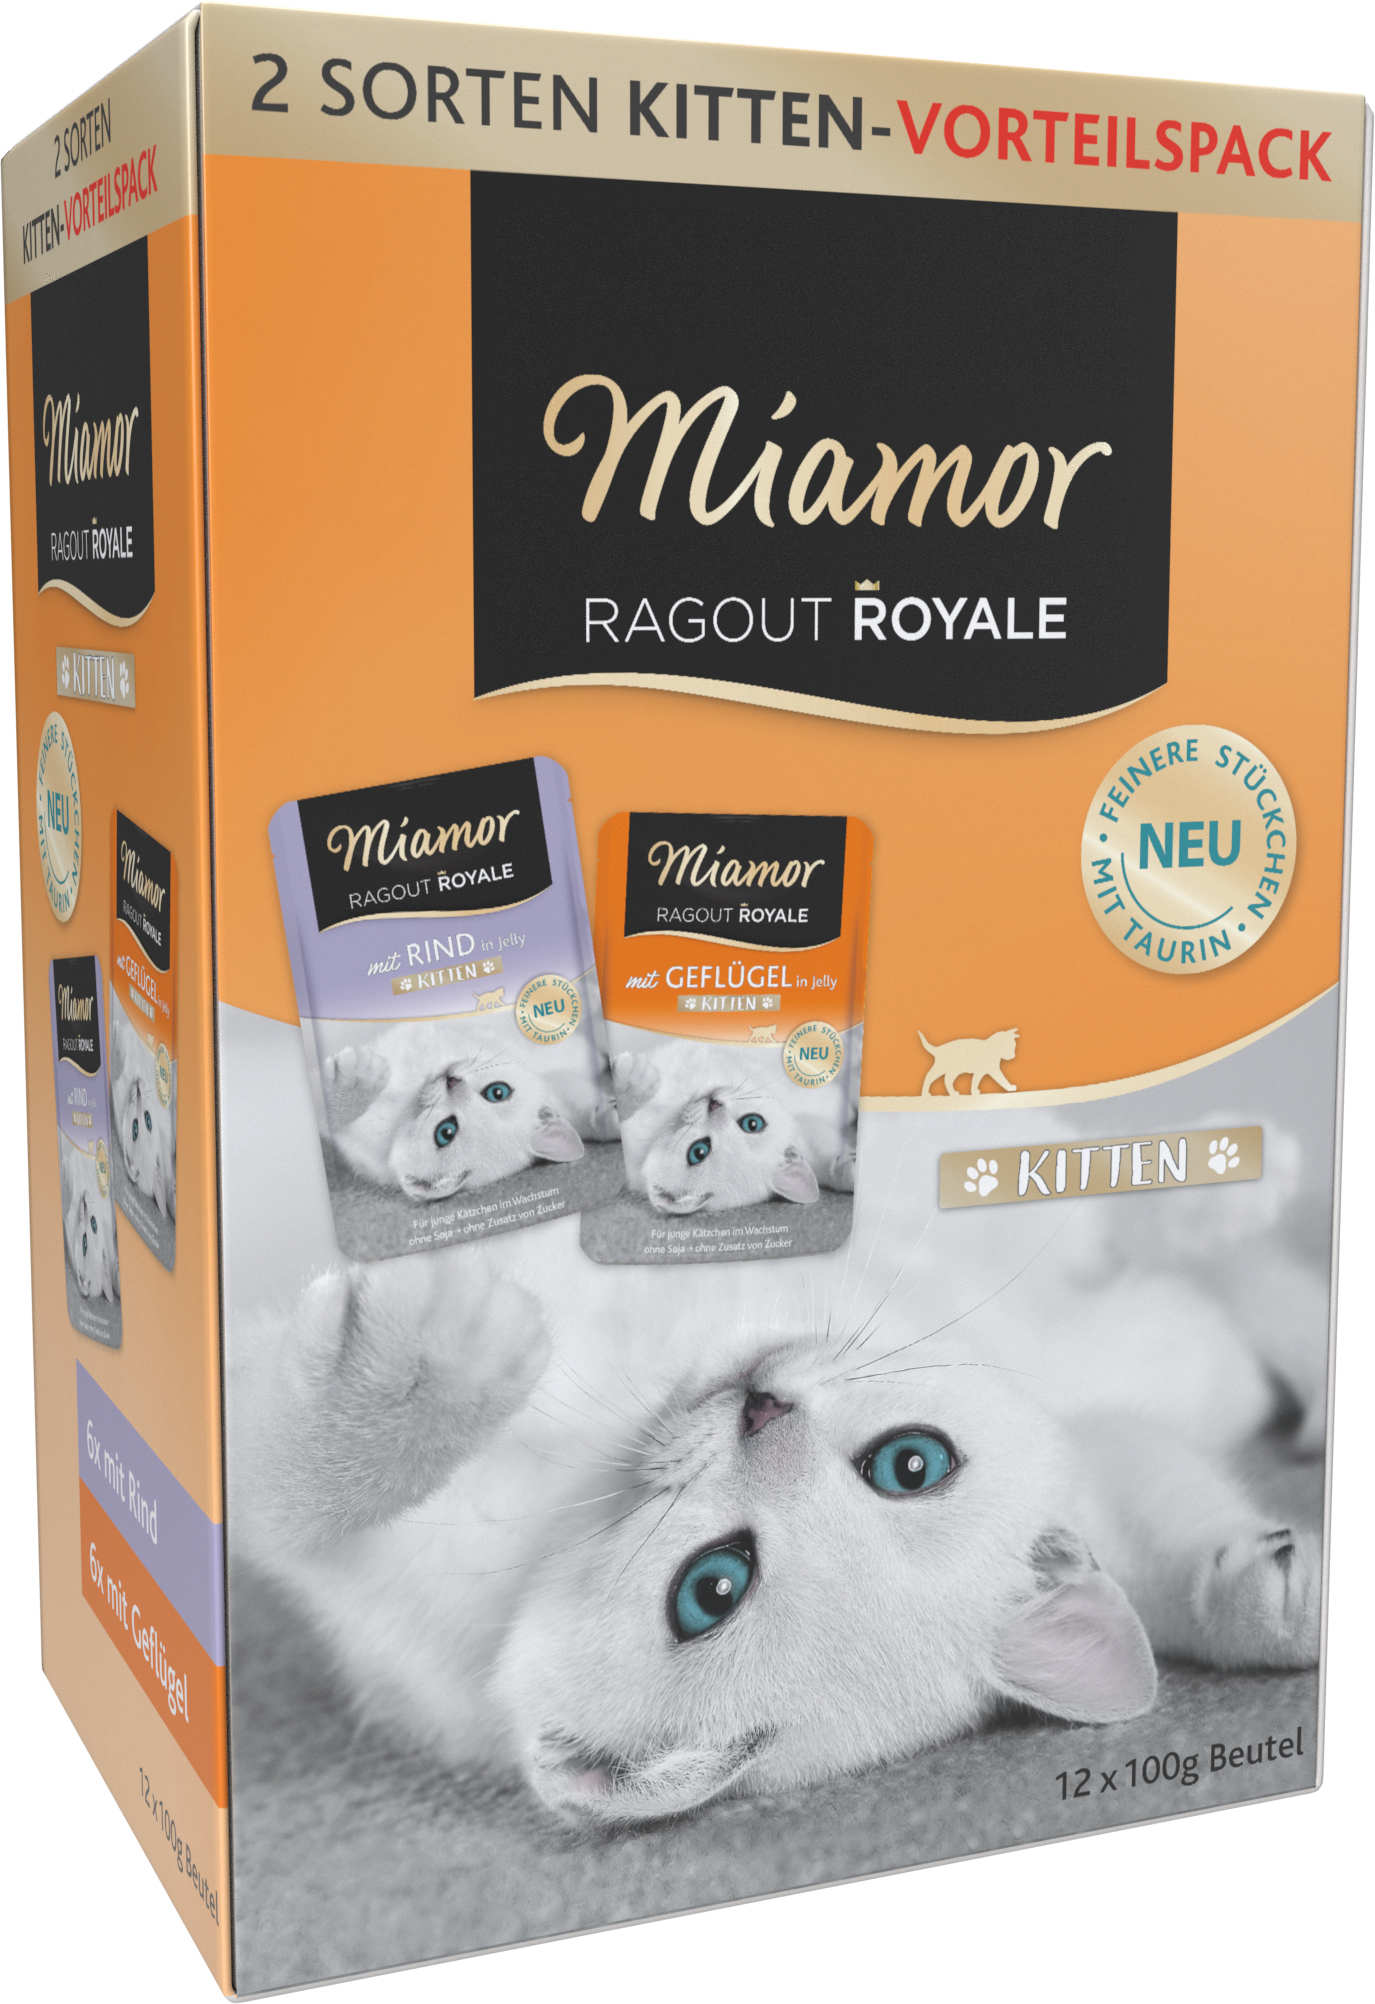 Miamor ragout pachet plicuri kitten, în gelatină 12x100g